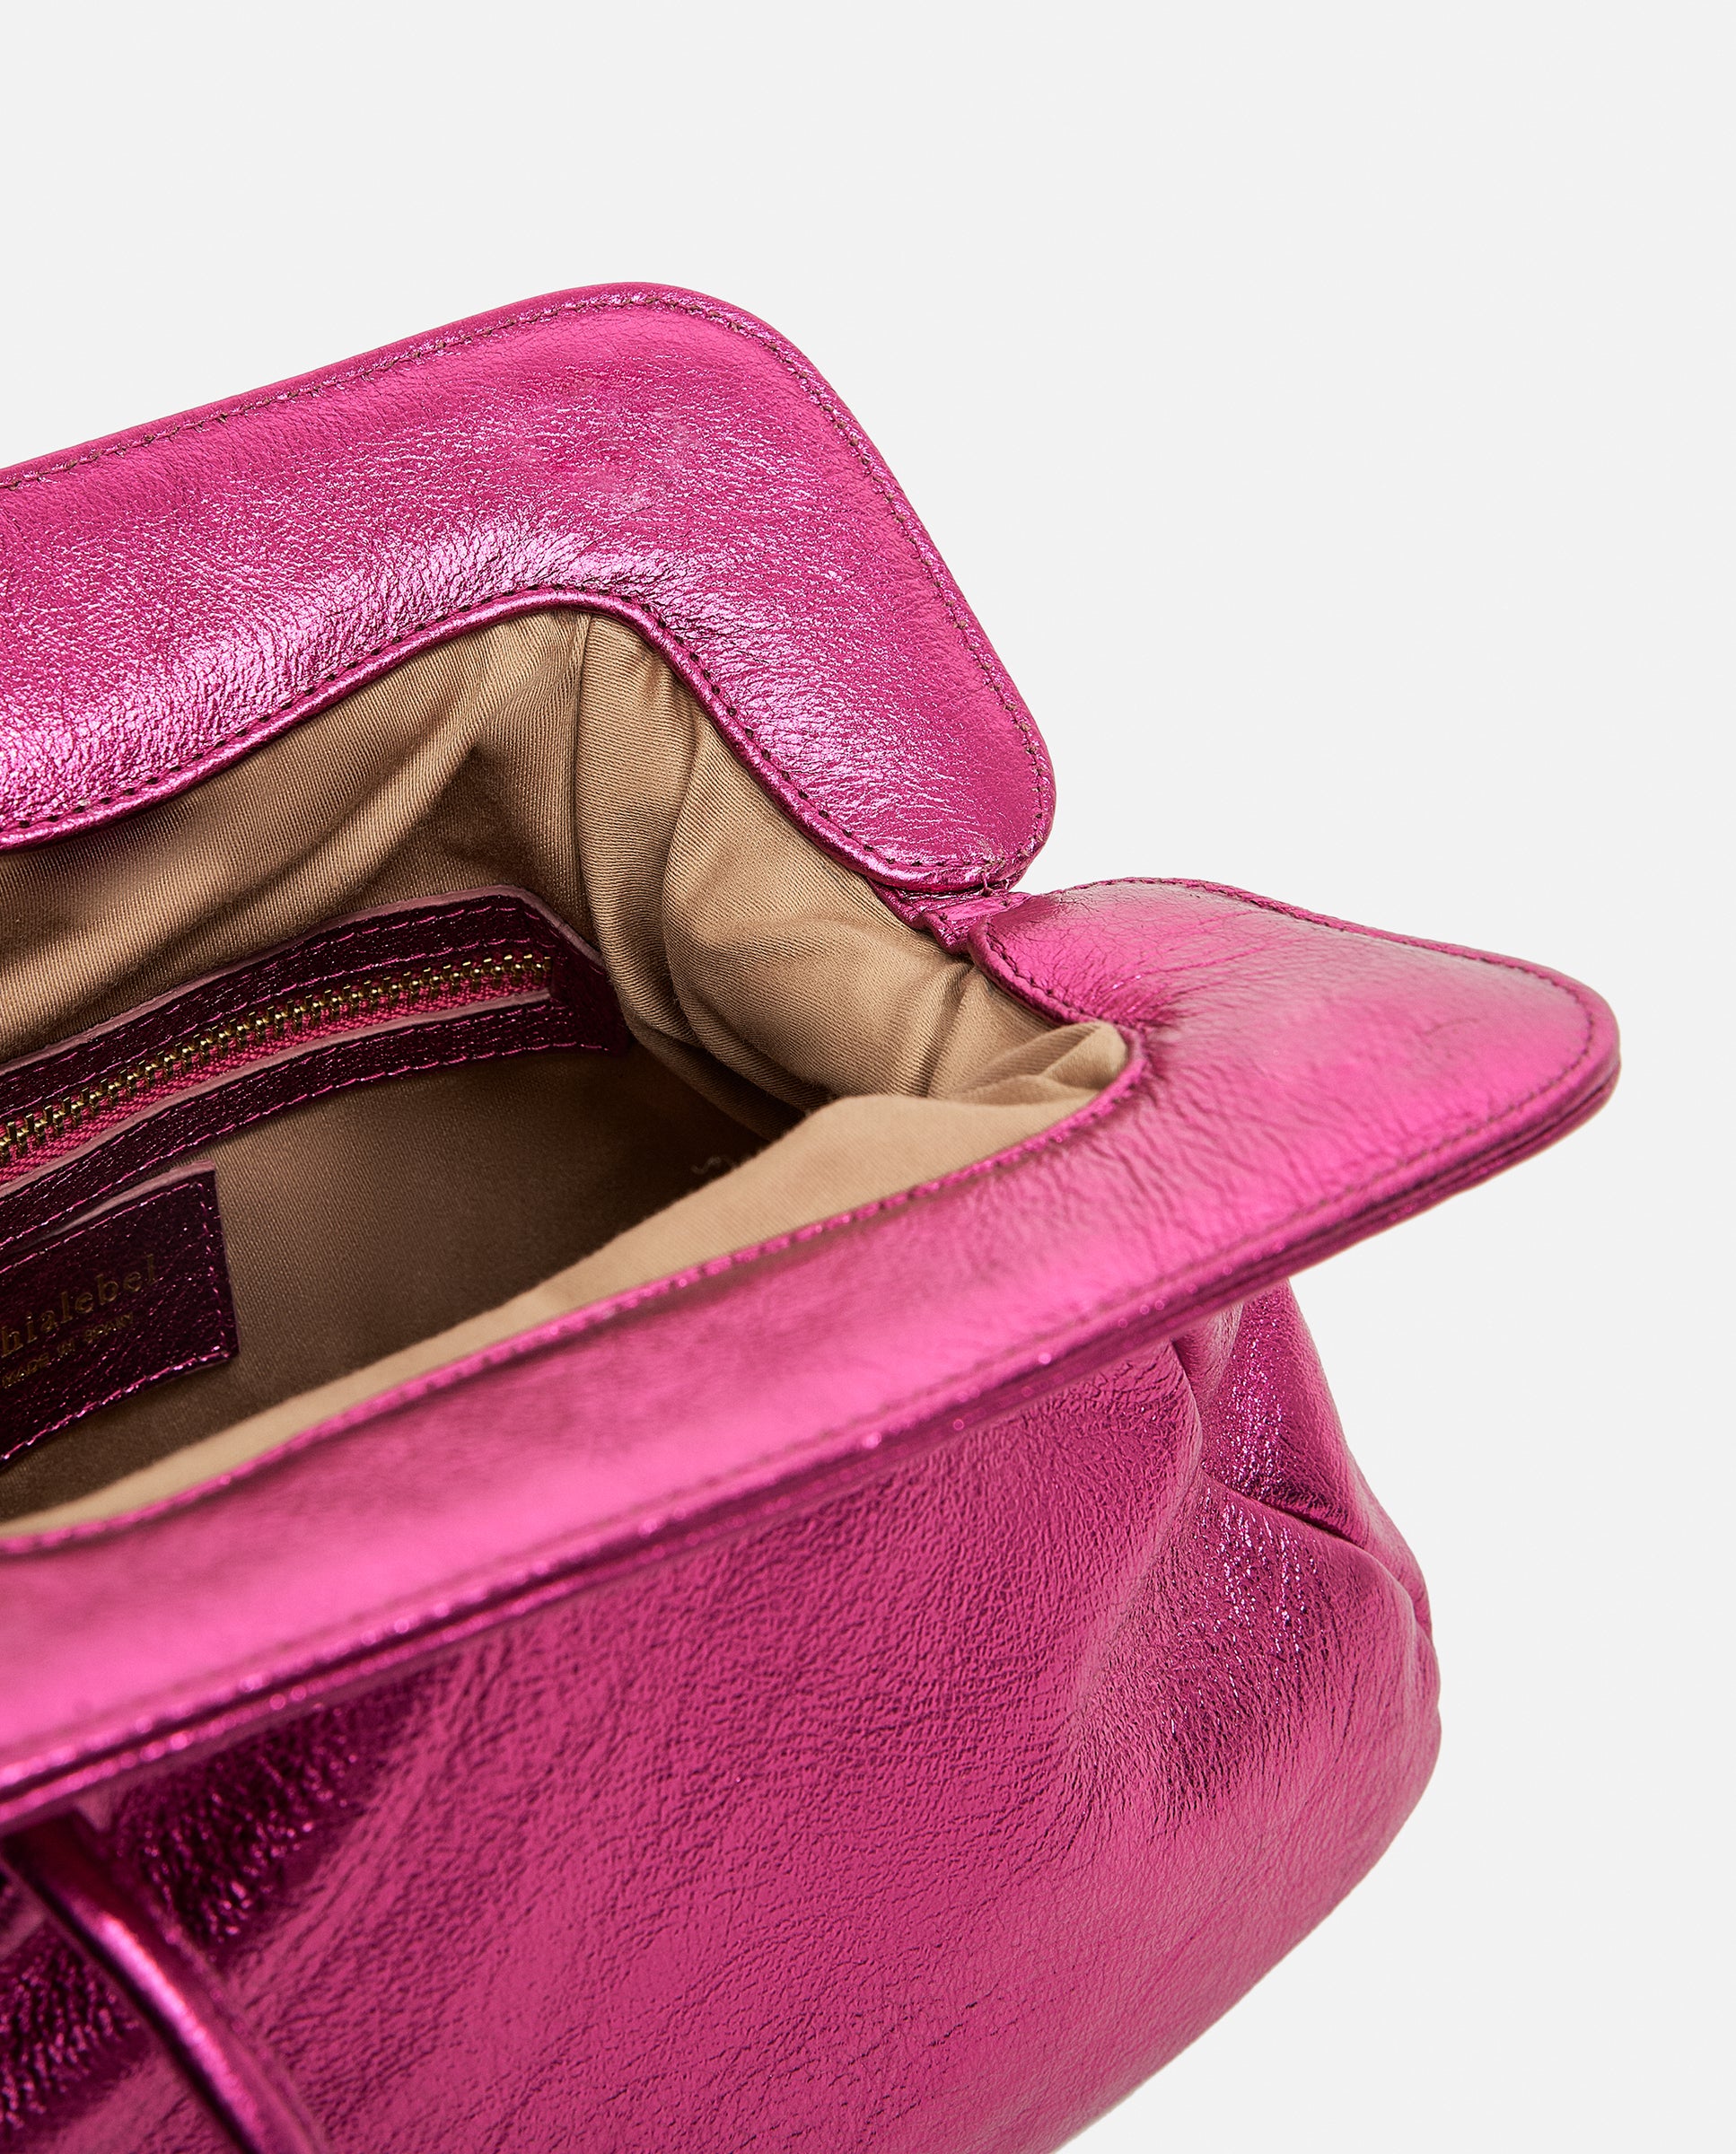 Detalle del interior del bolso rosa metalizado de Phialebel